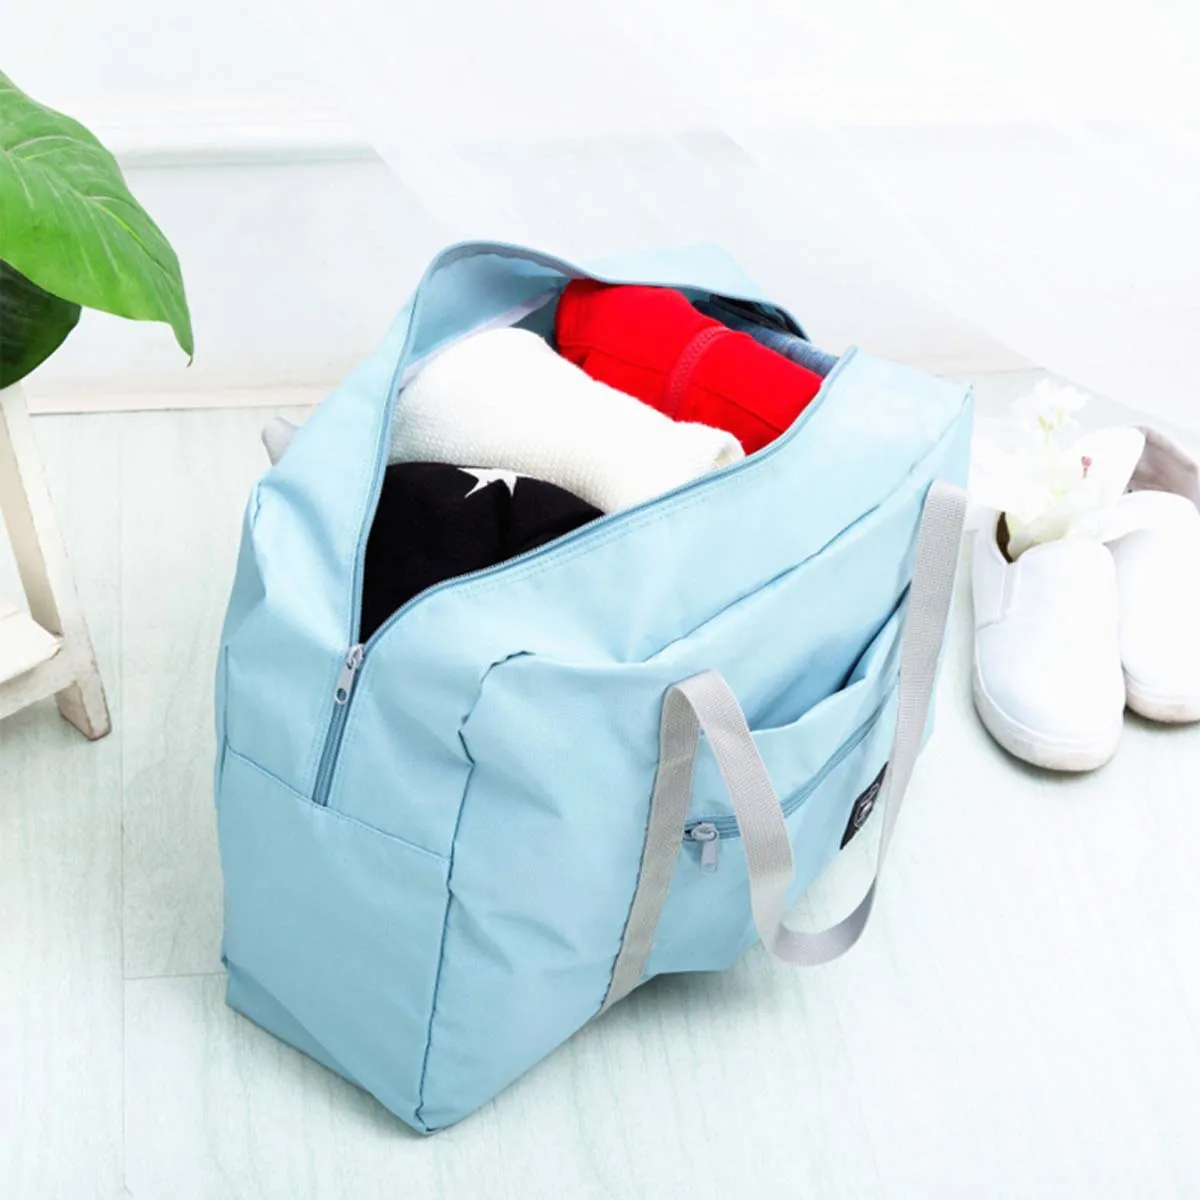 Best Sellers Nylon Foldable Travel Bags Unisex Large Capacity Bag Luggage Women WaterProof Handbags Men Travel Accessories Bags